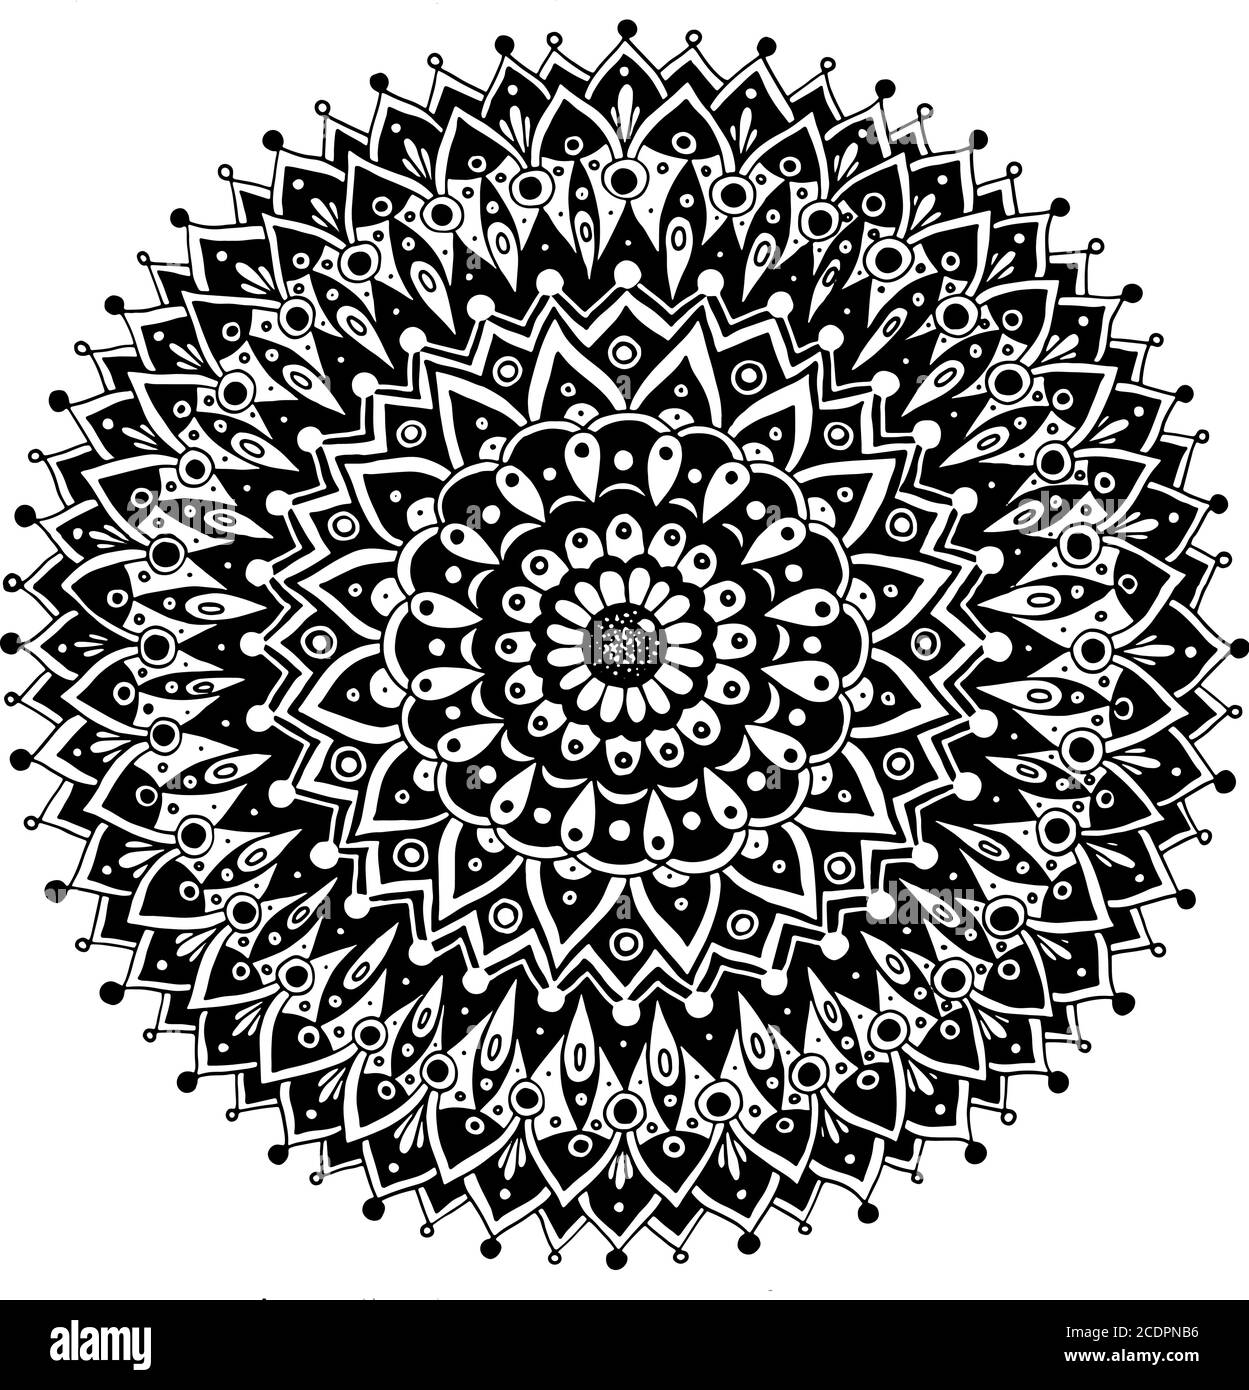 Mandala mit Blumendudel. Heilige Geometrie. Linie schwarz-weiß realistische Zeichnung. Antistress Malvorlagen für Erwachsene. Vektorgrafik. Stock Vektor